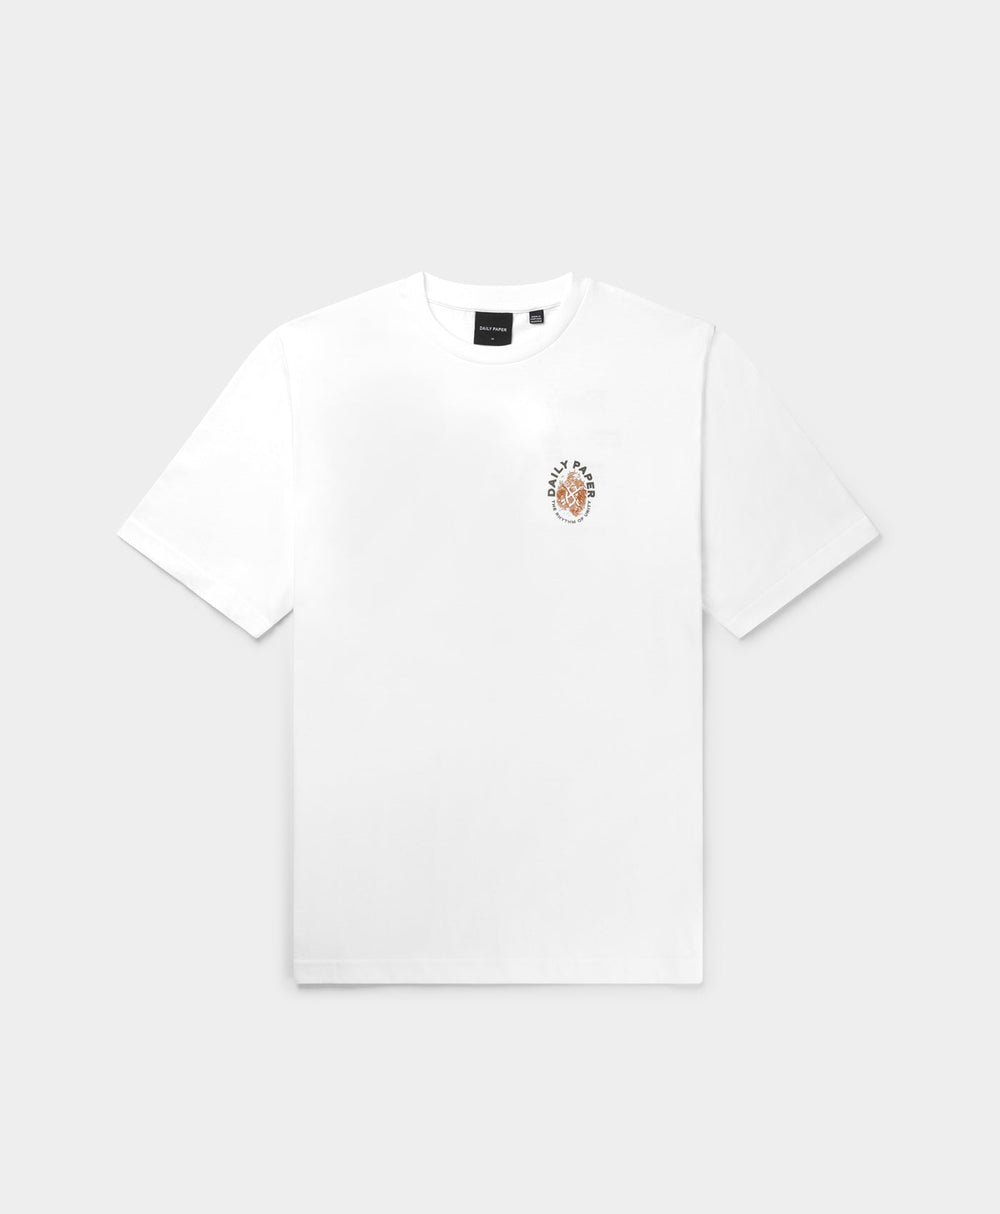 DP - White Identity T-Shirt - Packshot - Rear